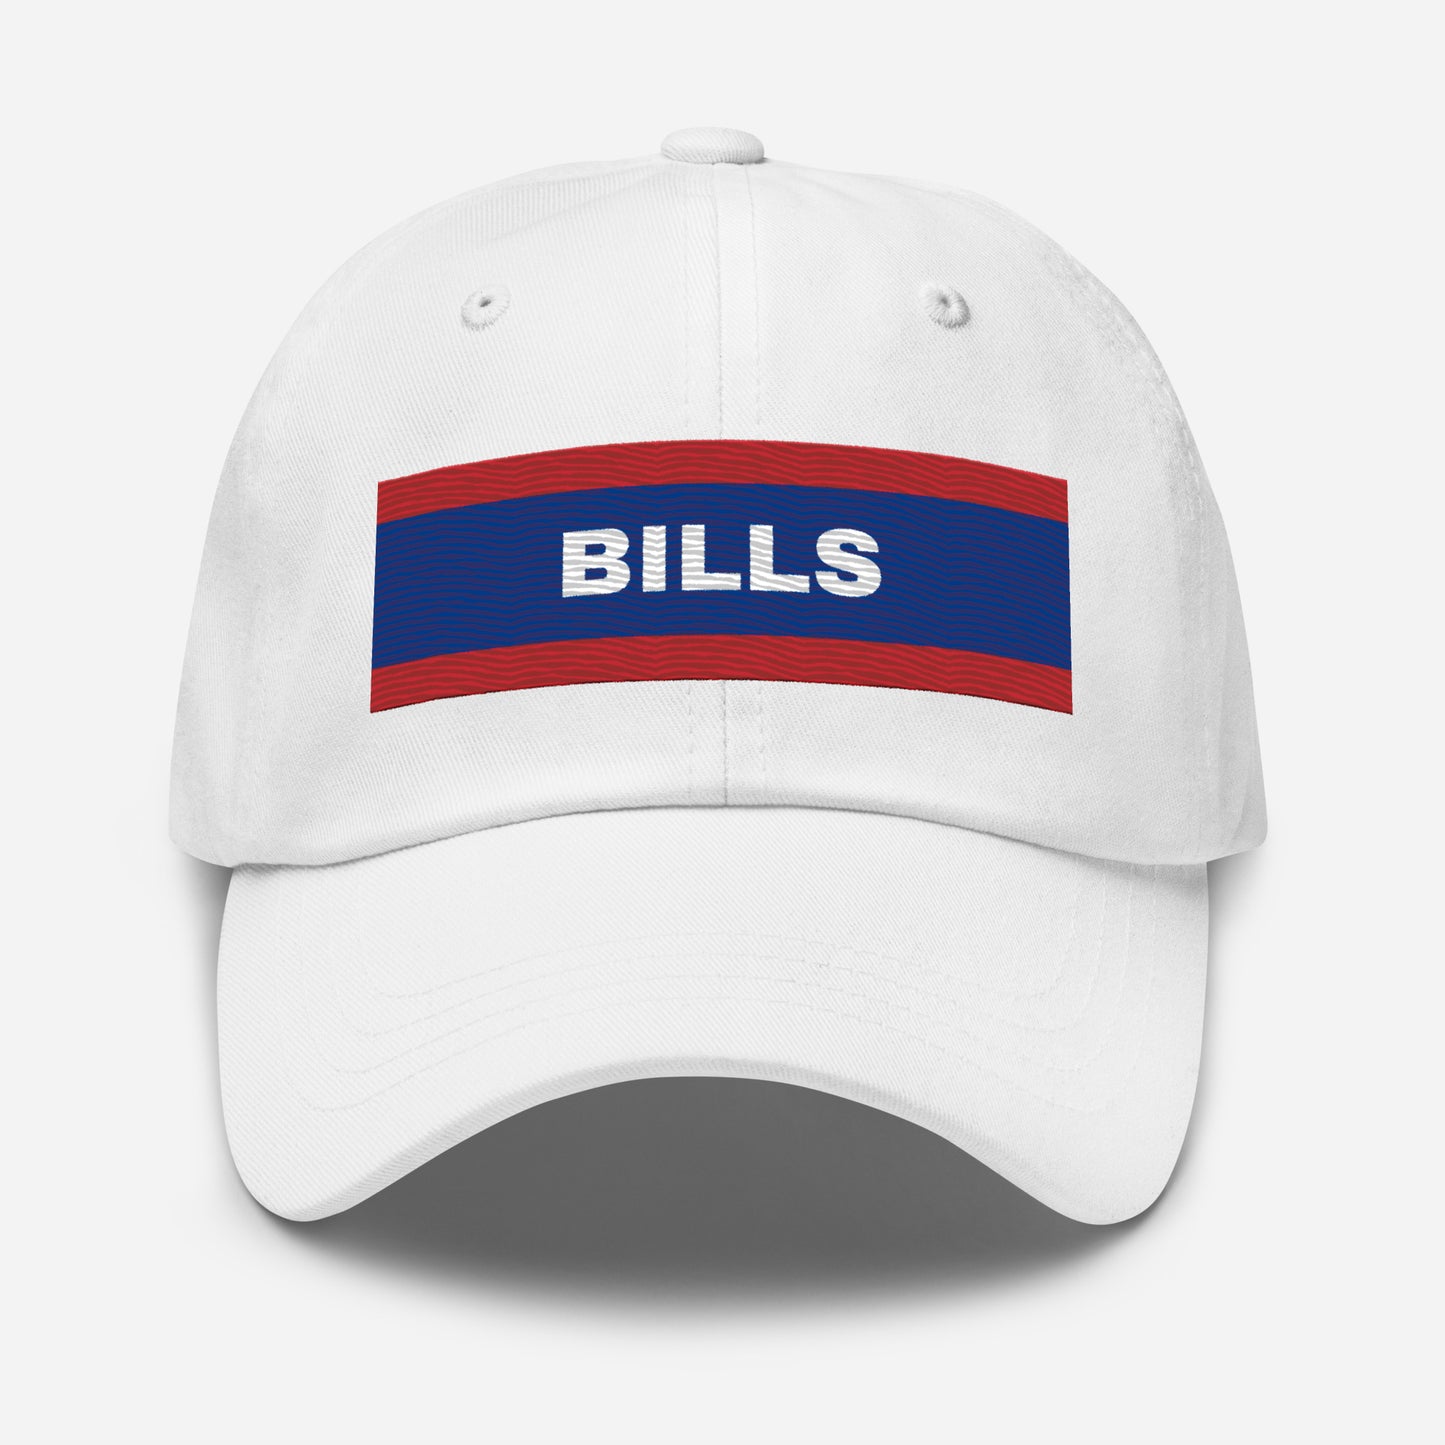 Bills Embroidered Dad Hat